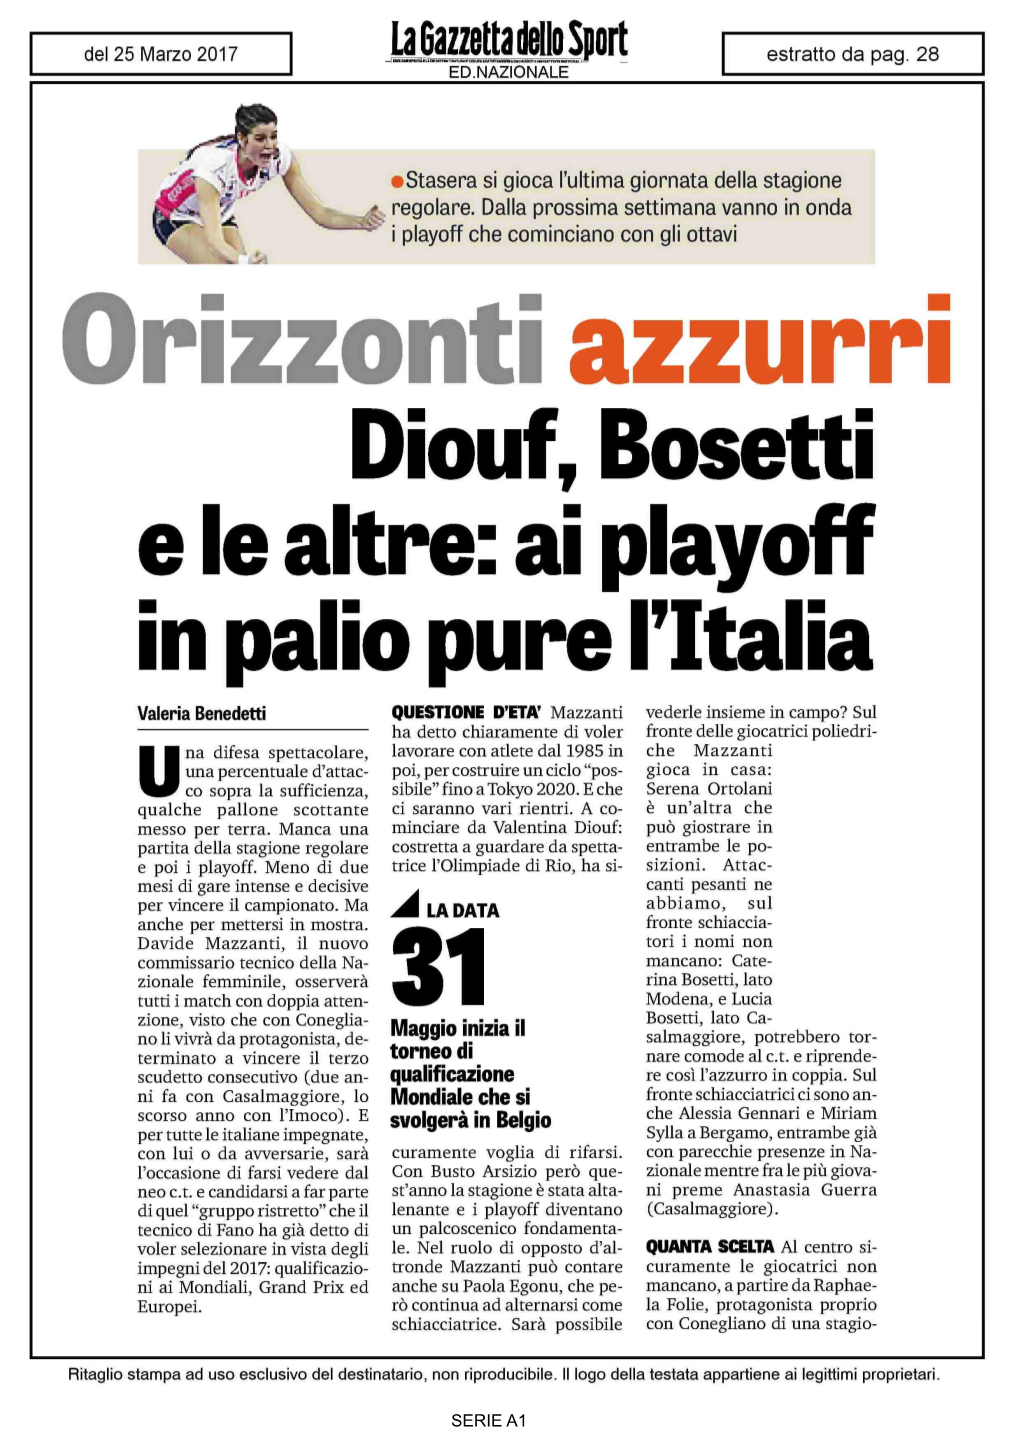 Diouf, Bosetti E Le Altre: Ai Playoff in Palio Pure L'italia